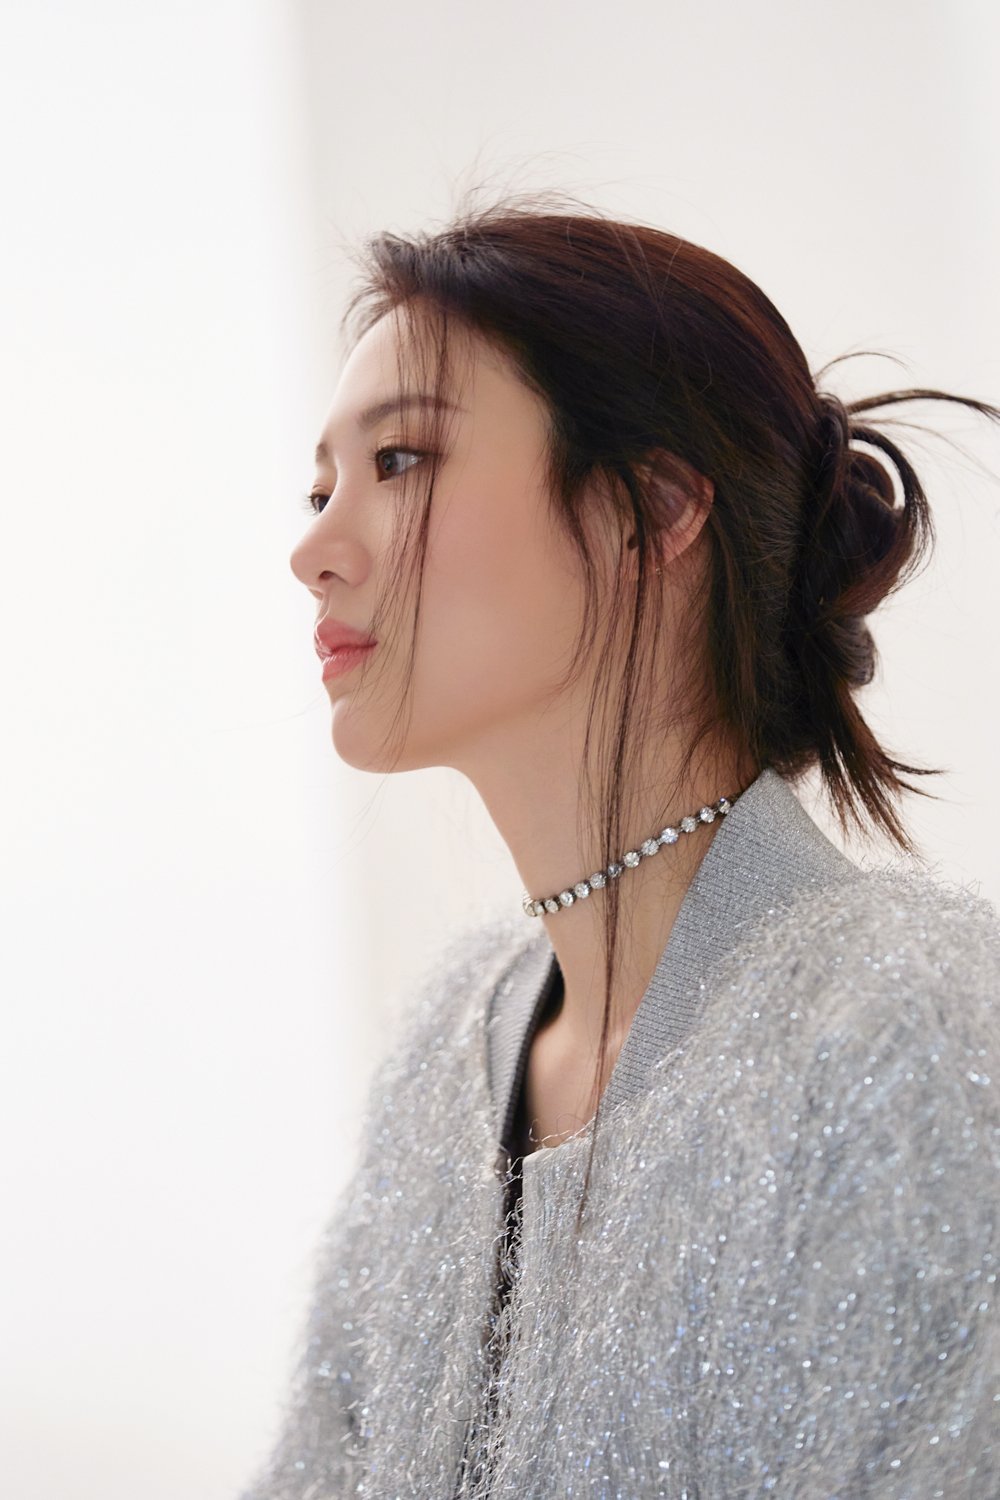 김수현 섹시한 사진 & 고화질 사진